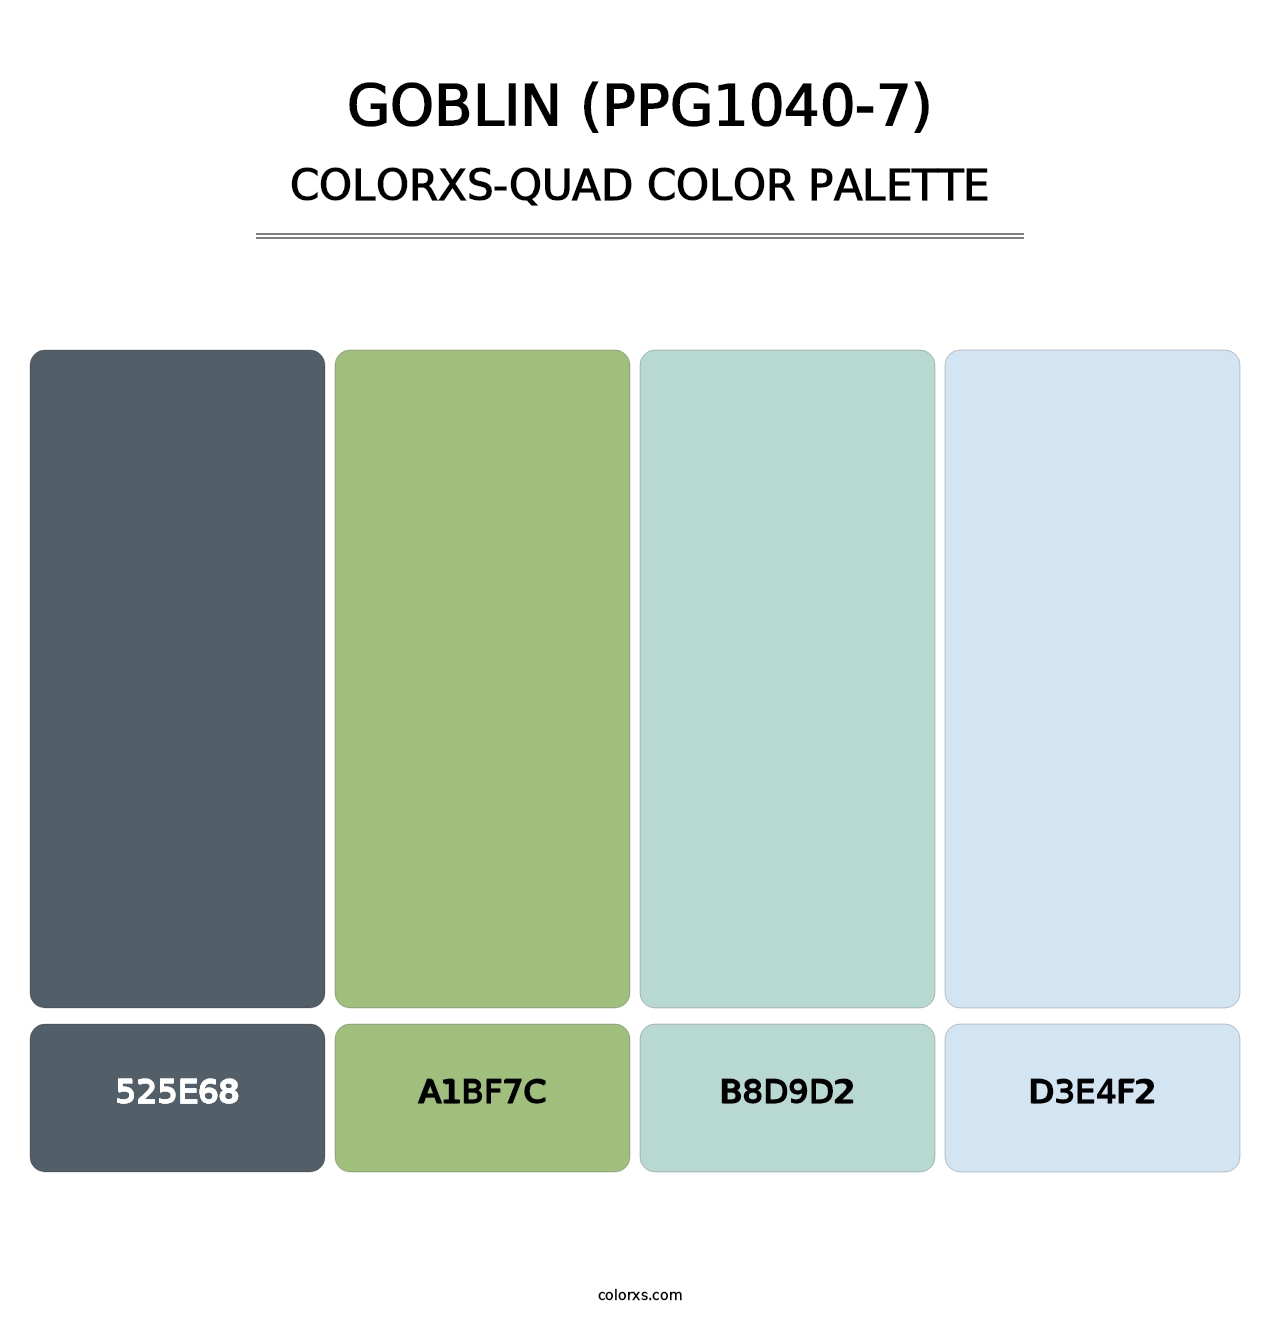 Goblin (PPG1040-7) - Colorxs Quad Palette